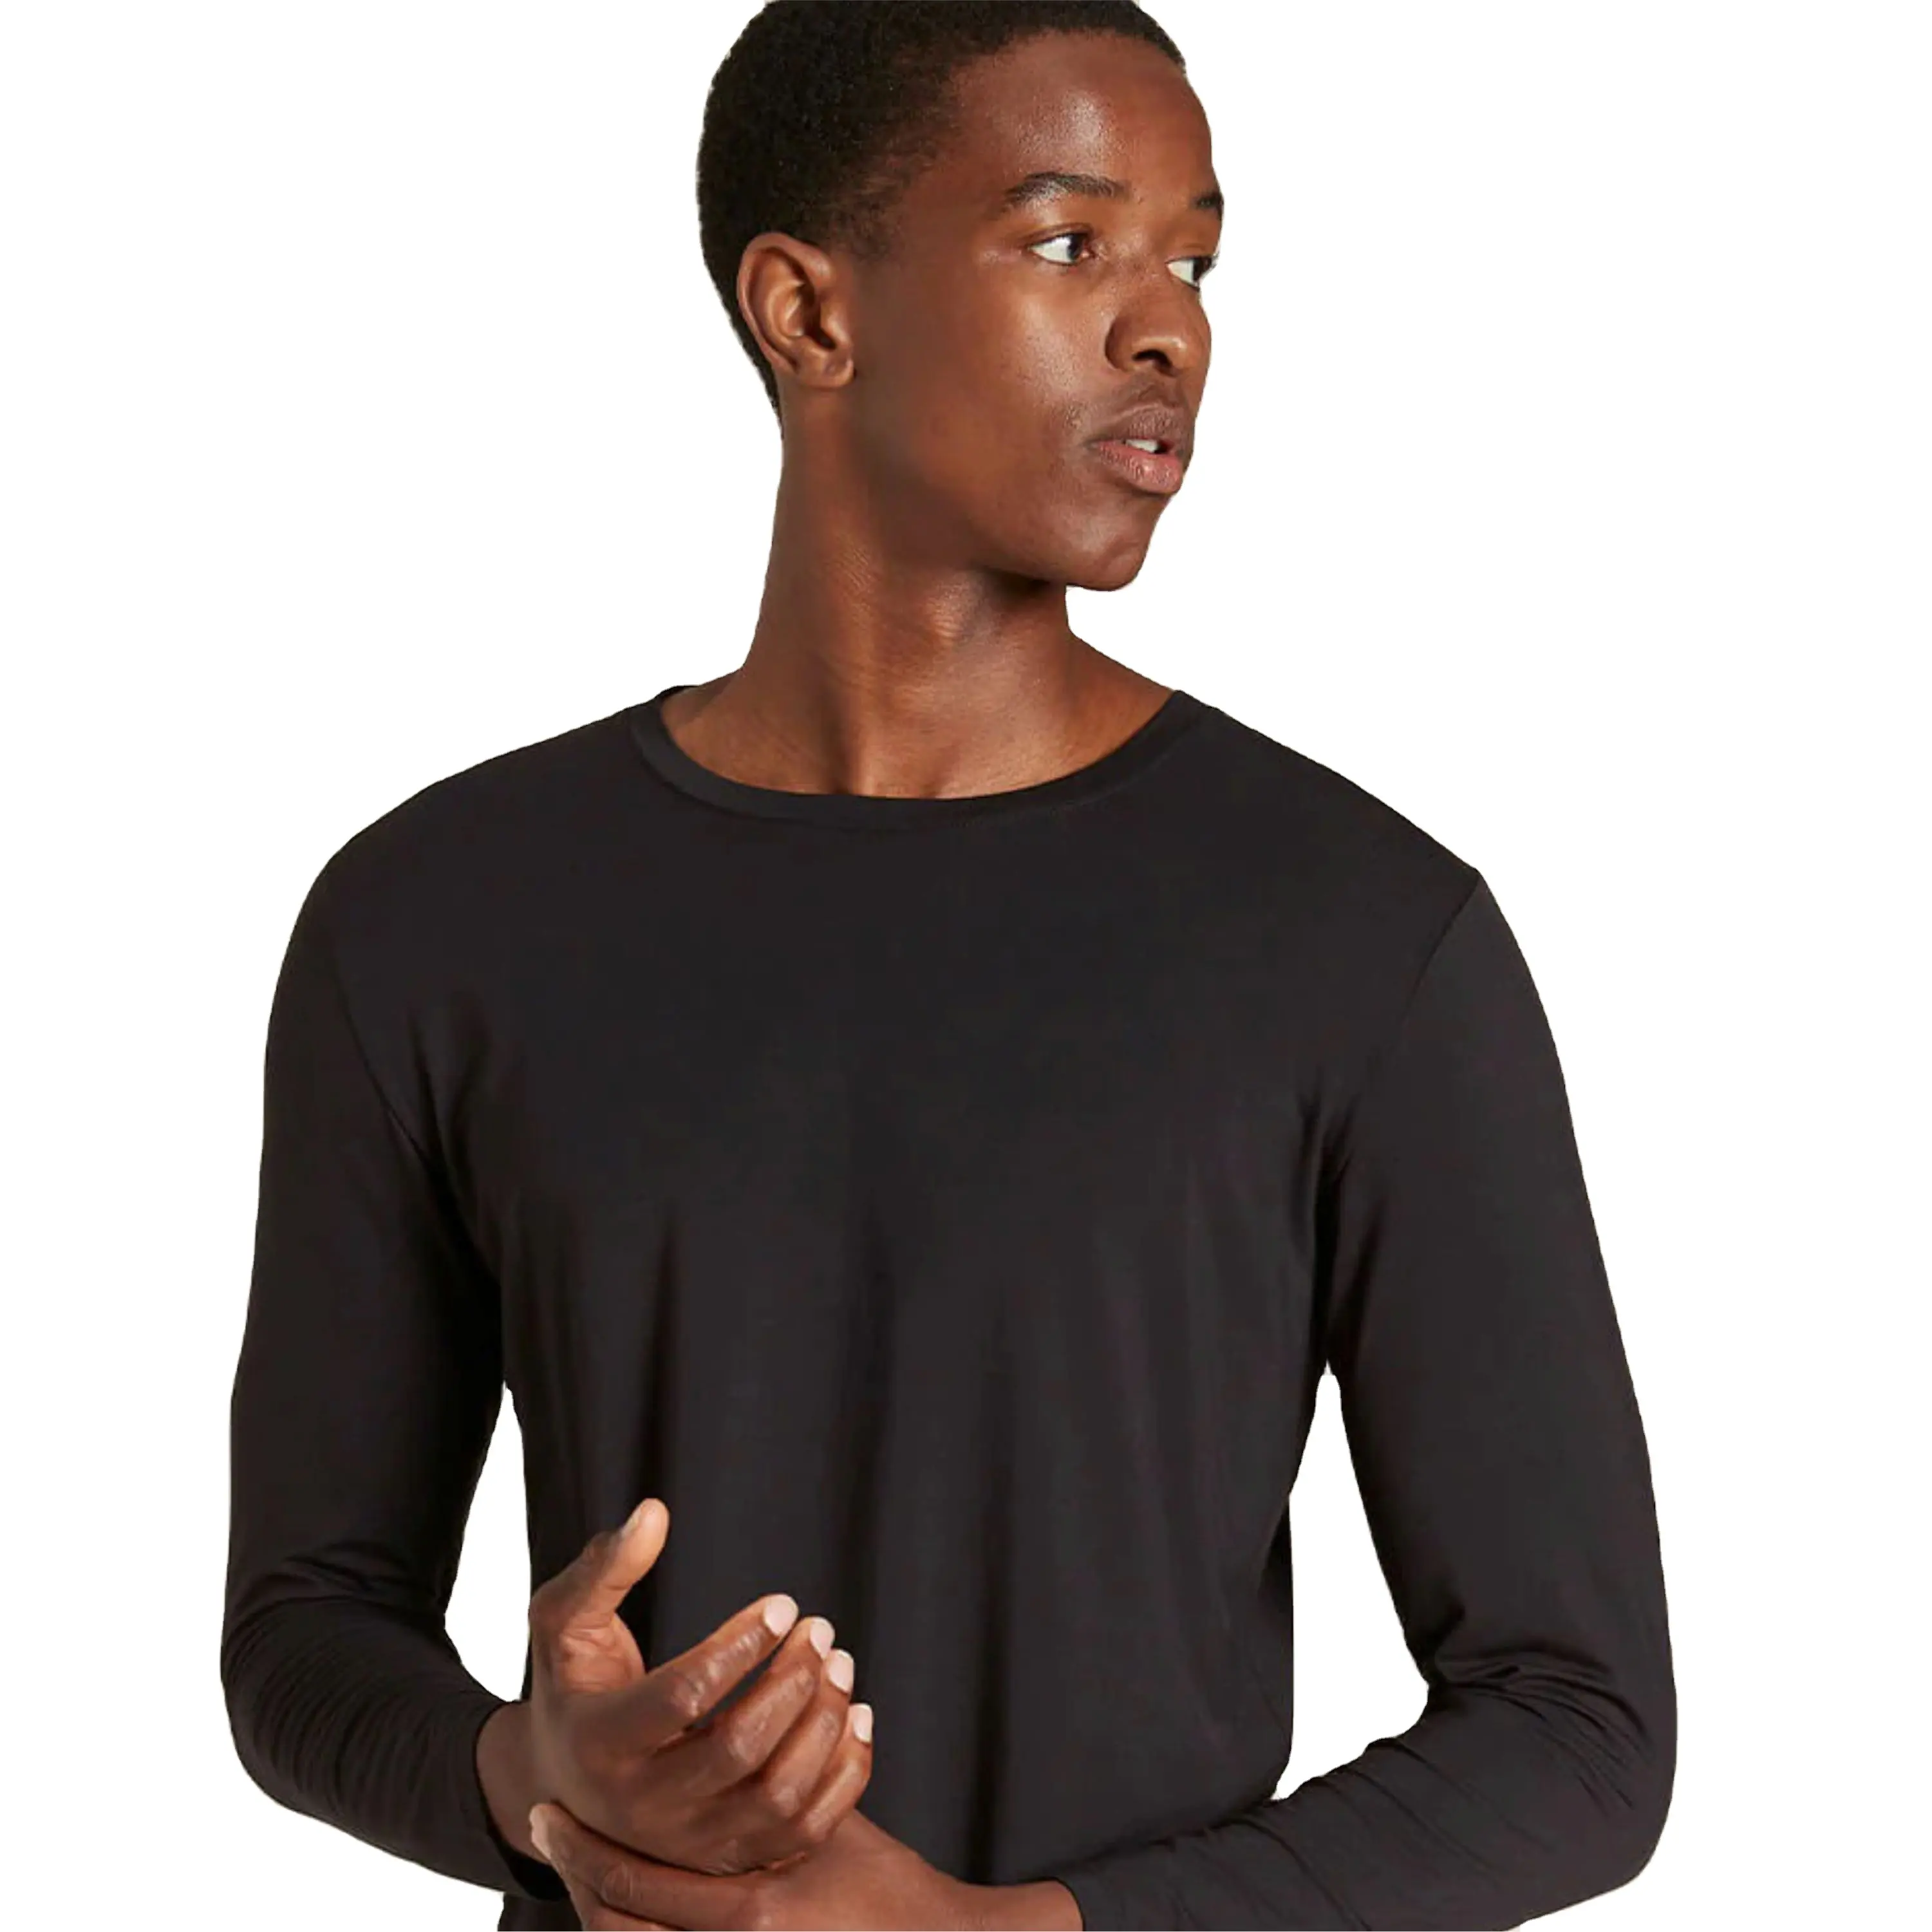 メンズ快適コットン長袖クルーネックTシャツ-日常のカジュアルウェアに最適、複数の色で利用可能